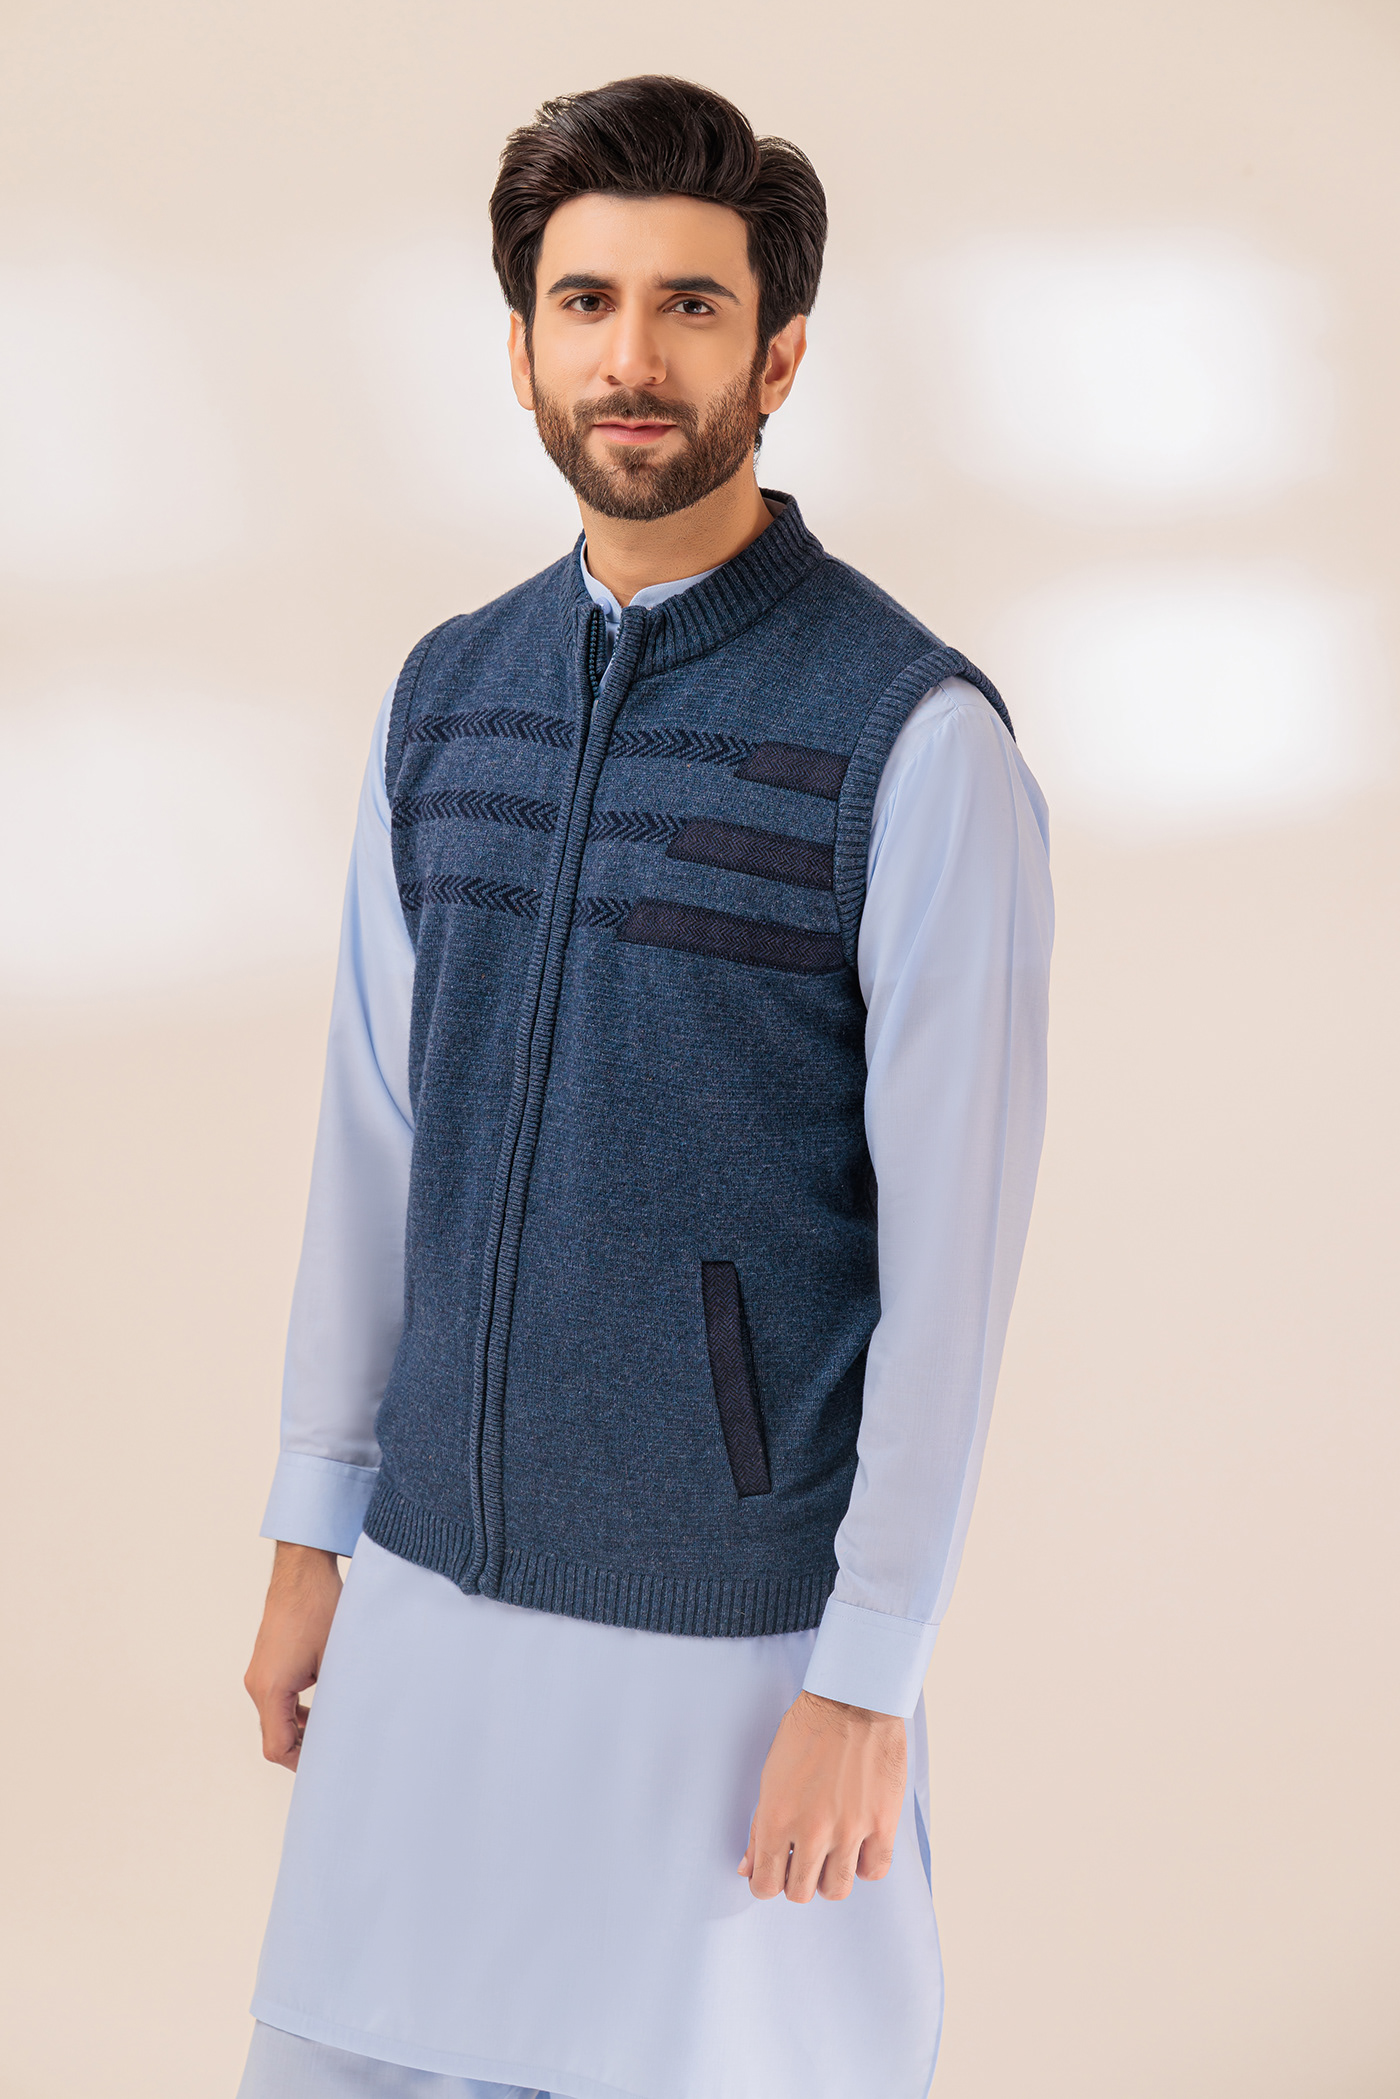 wool yarn knitwear Menswear Sweaters Zipper apparel WINTER COLLECTION Fashion garment